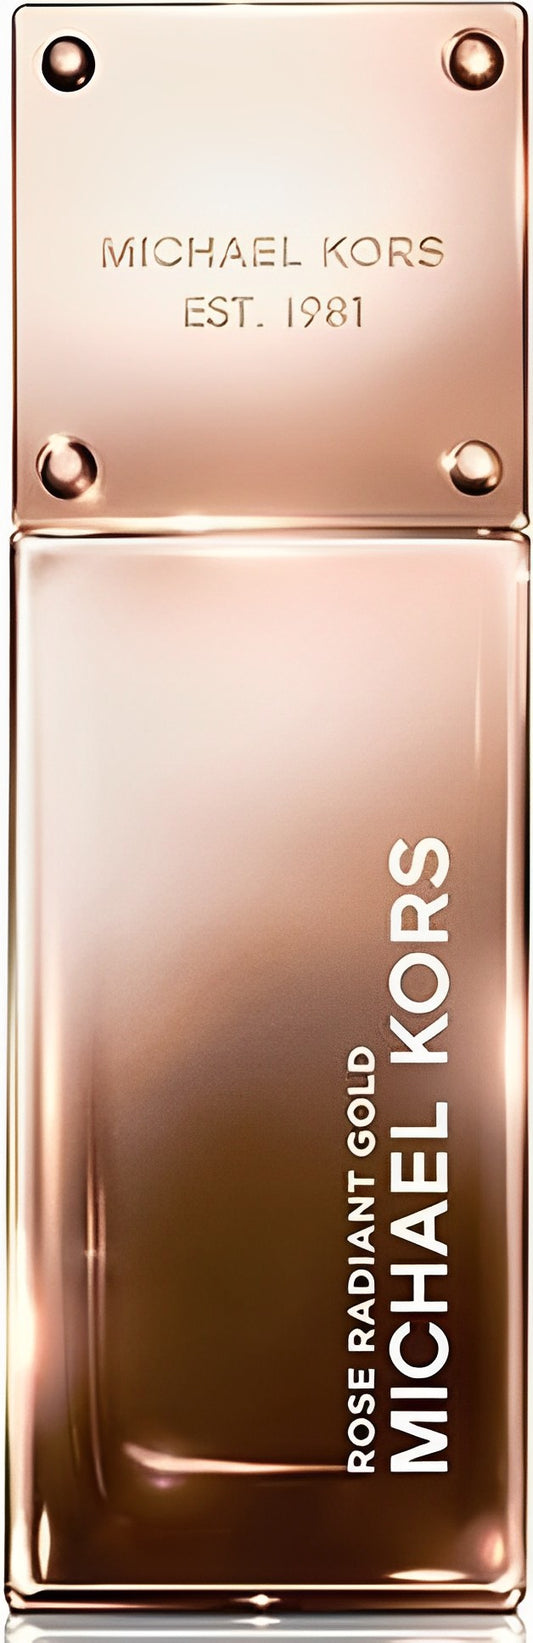 Michael Kors - Rose Radiant Gold edp 50ml tester / LADY